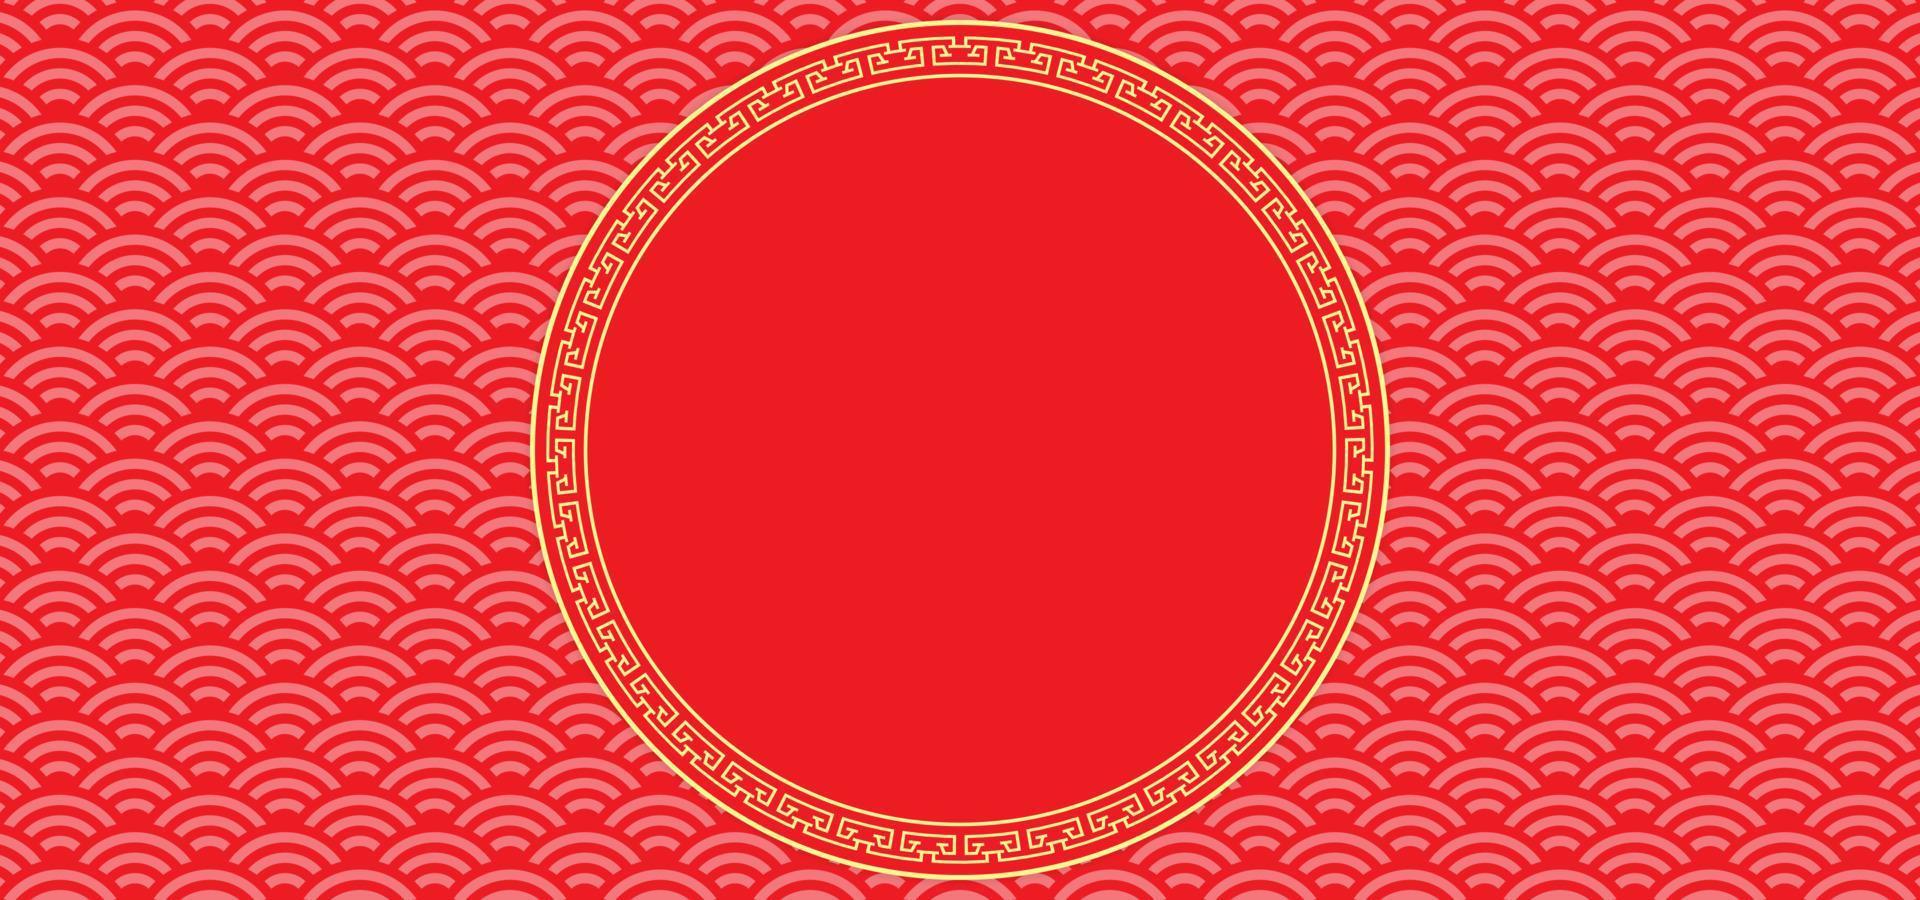 fundo de ano novo chinês com espaço em branco para texto. tema de fundo vermelho e dourado com textura padrão e ornamento. ilustração vetorial vetor